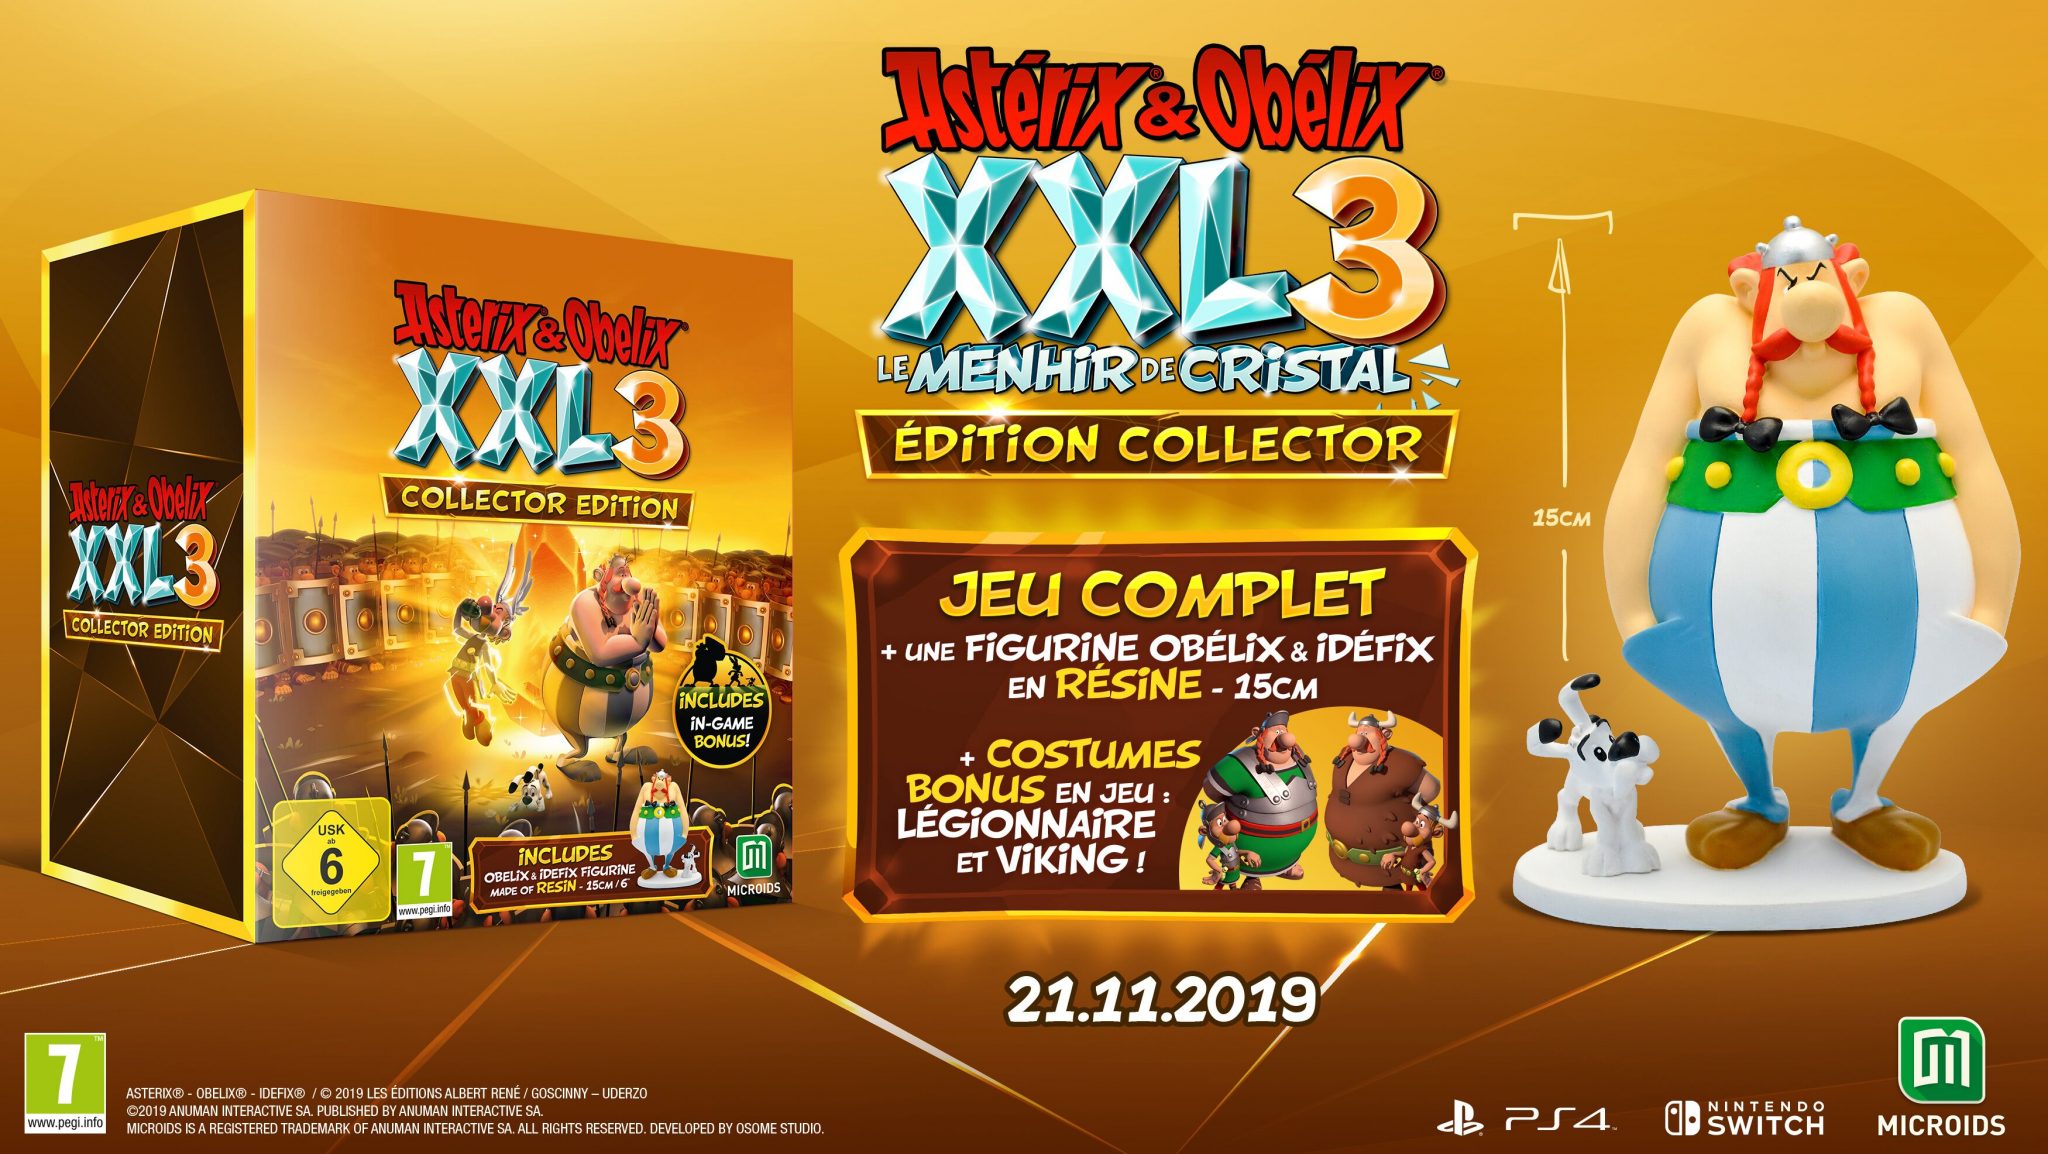 Astérix et obélix xxl 3 édition collector